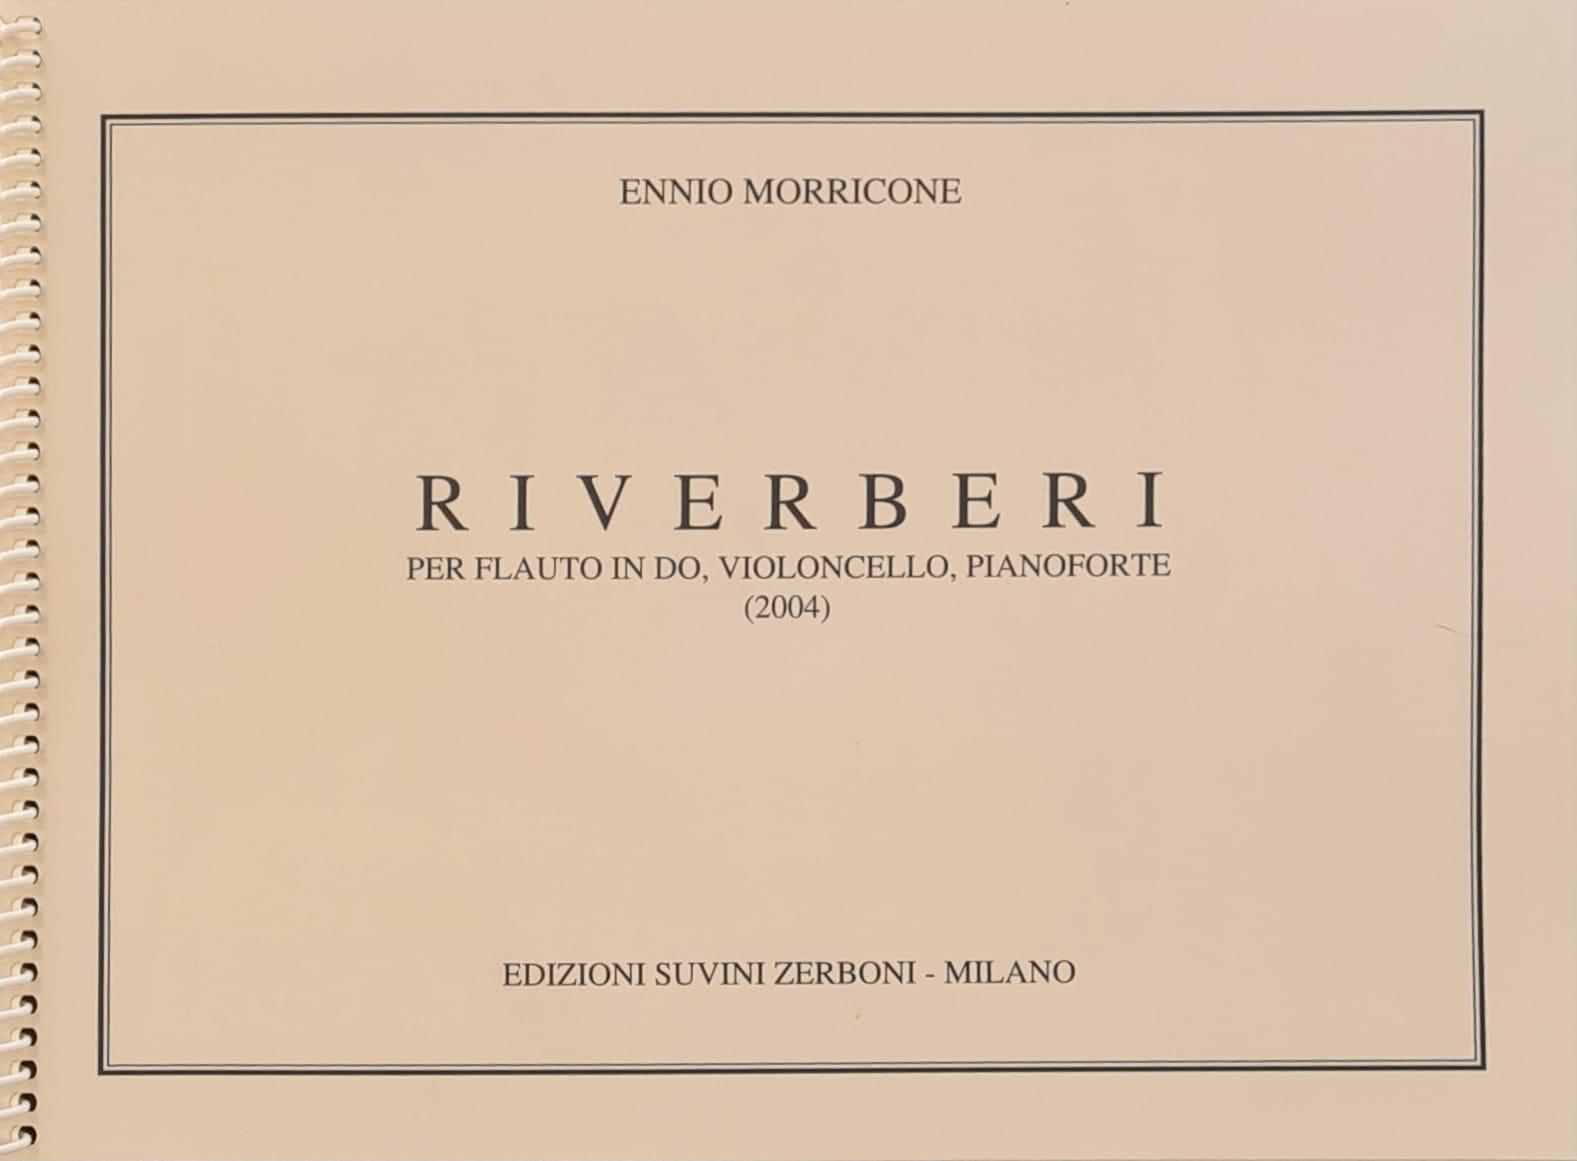 Riverberi, per flauto, violoncello e pianoforte - Ennio Morricone | Suono Flauti